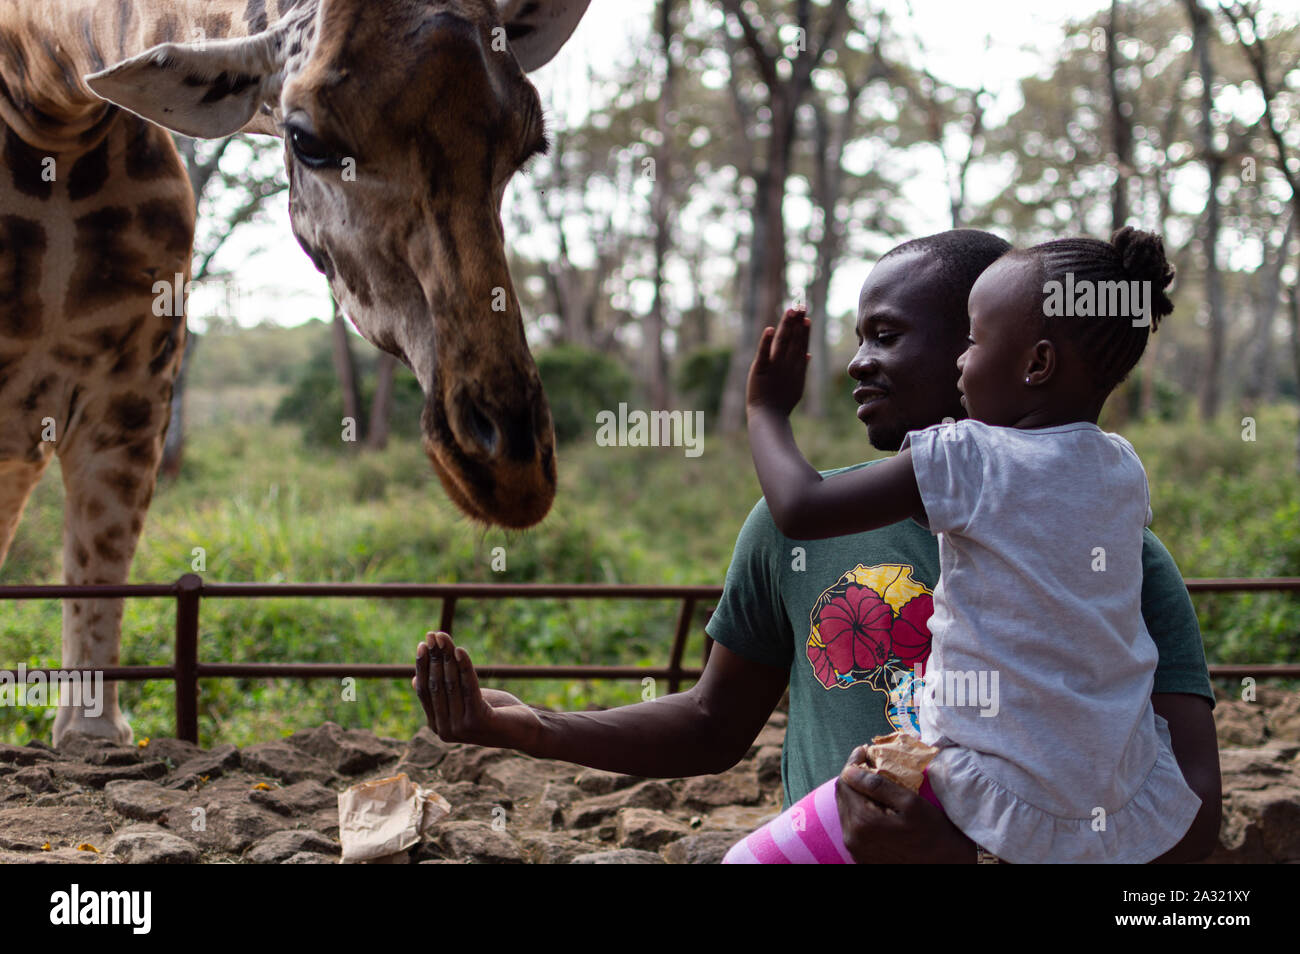 Family feeding giraffe Stock Photo